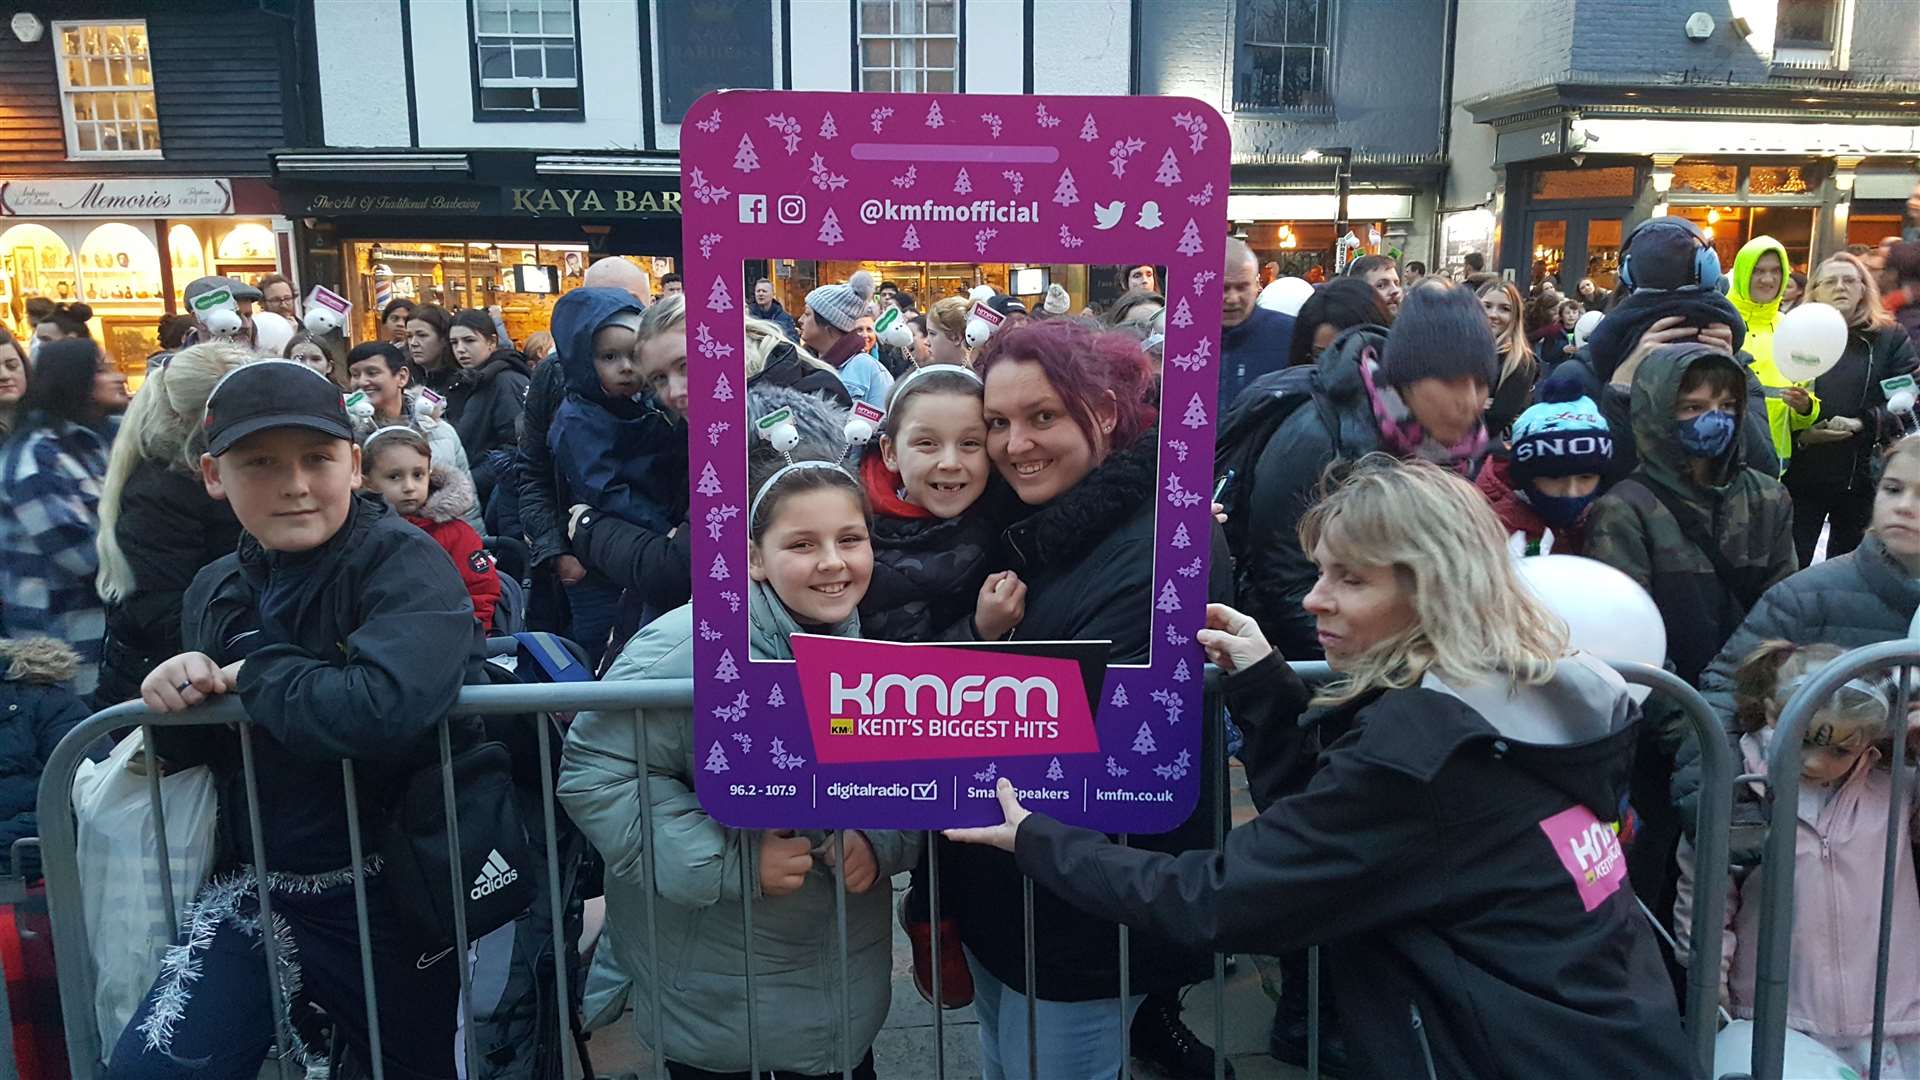 People posing with the KMFM selfie board